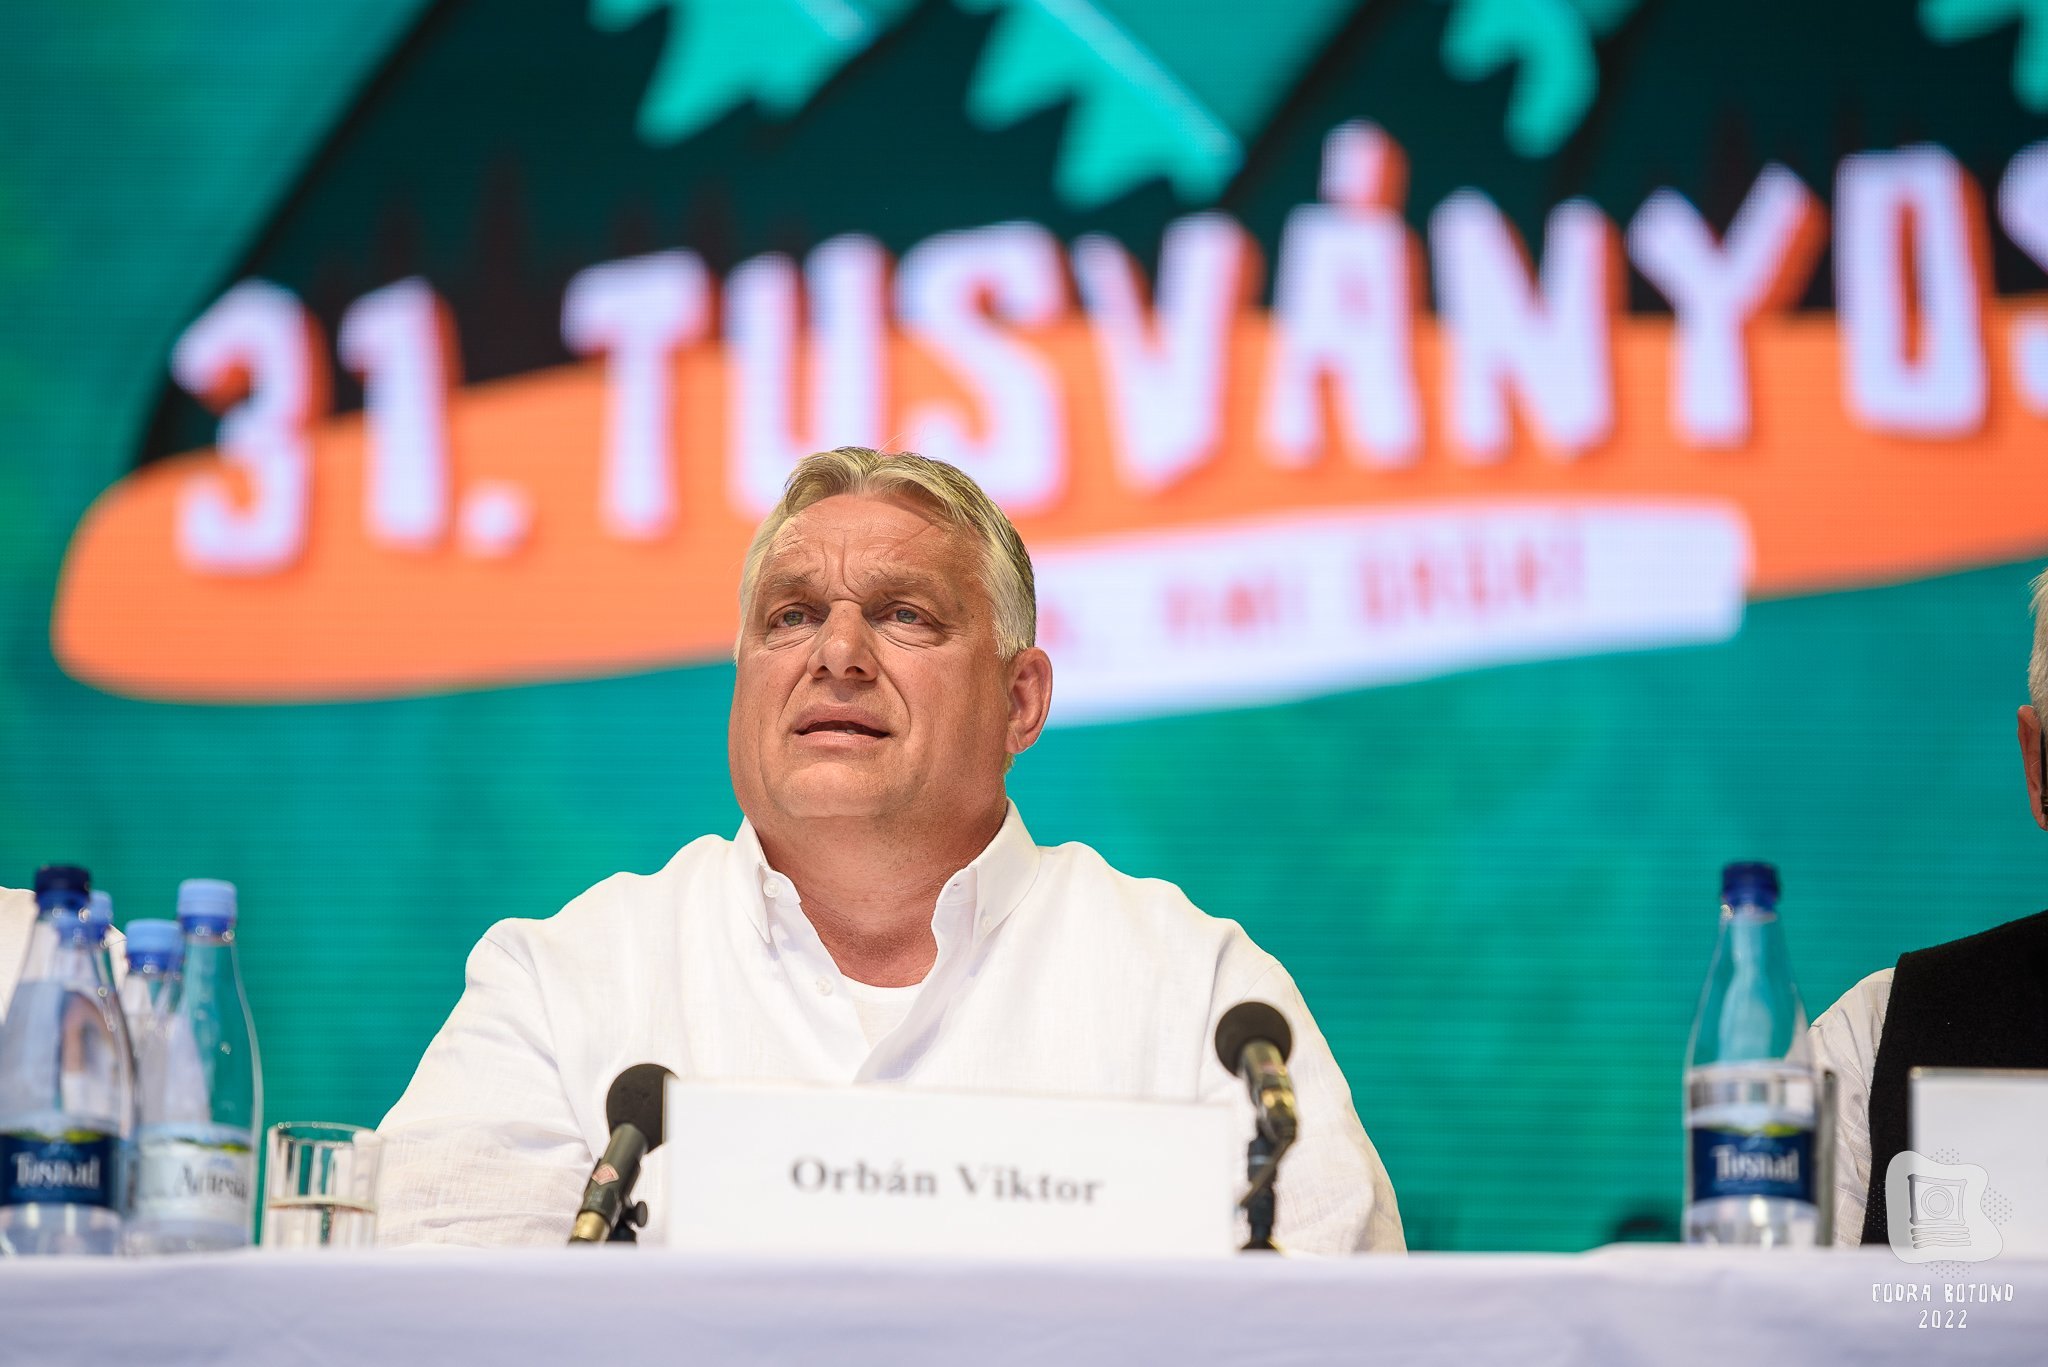 A CNCD gyűlöletbeszédnek minősítette Orbán Viktor tusványosi kijelentéseit